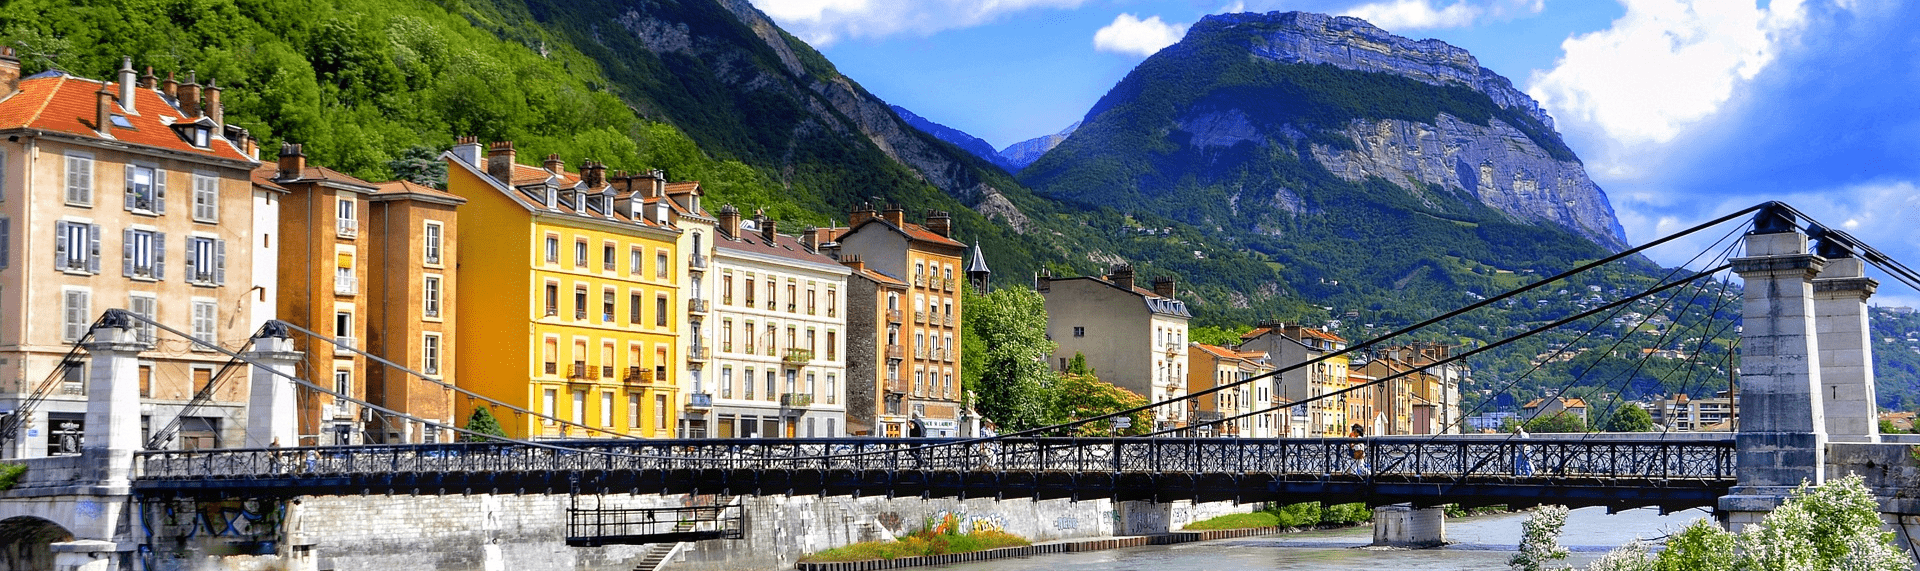 vide maison Grenoble, debarras maison Grenoble, vide cave Grenoble, debarras appartement Grenoble, vide maison gratuit Grenoble